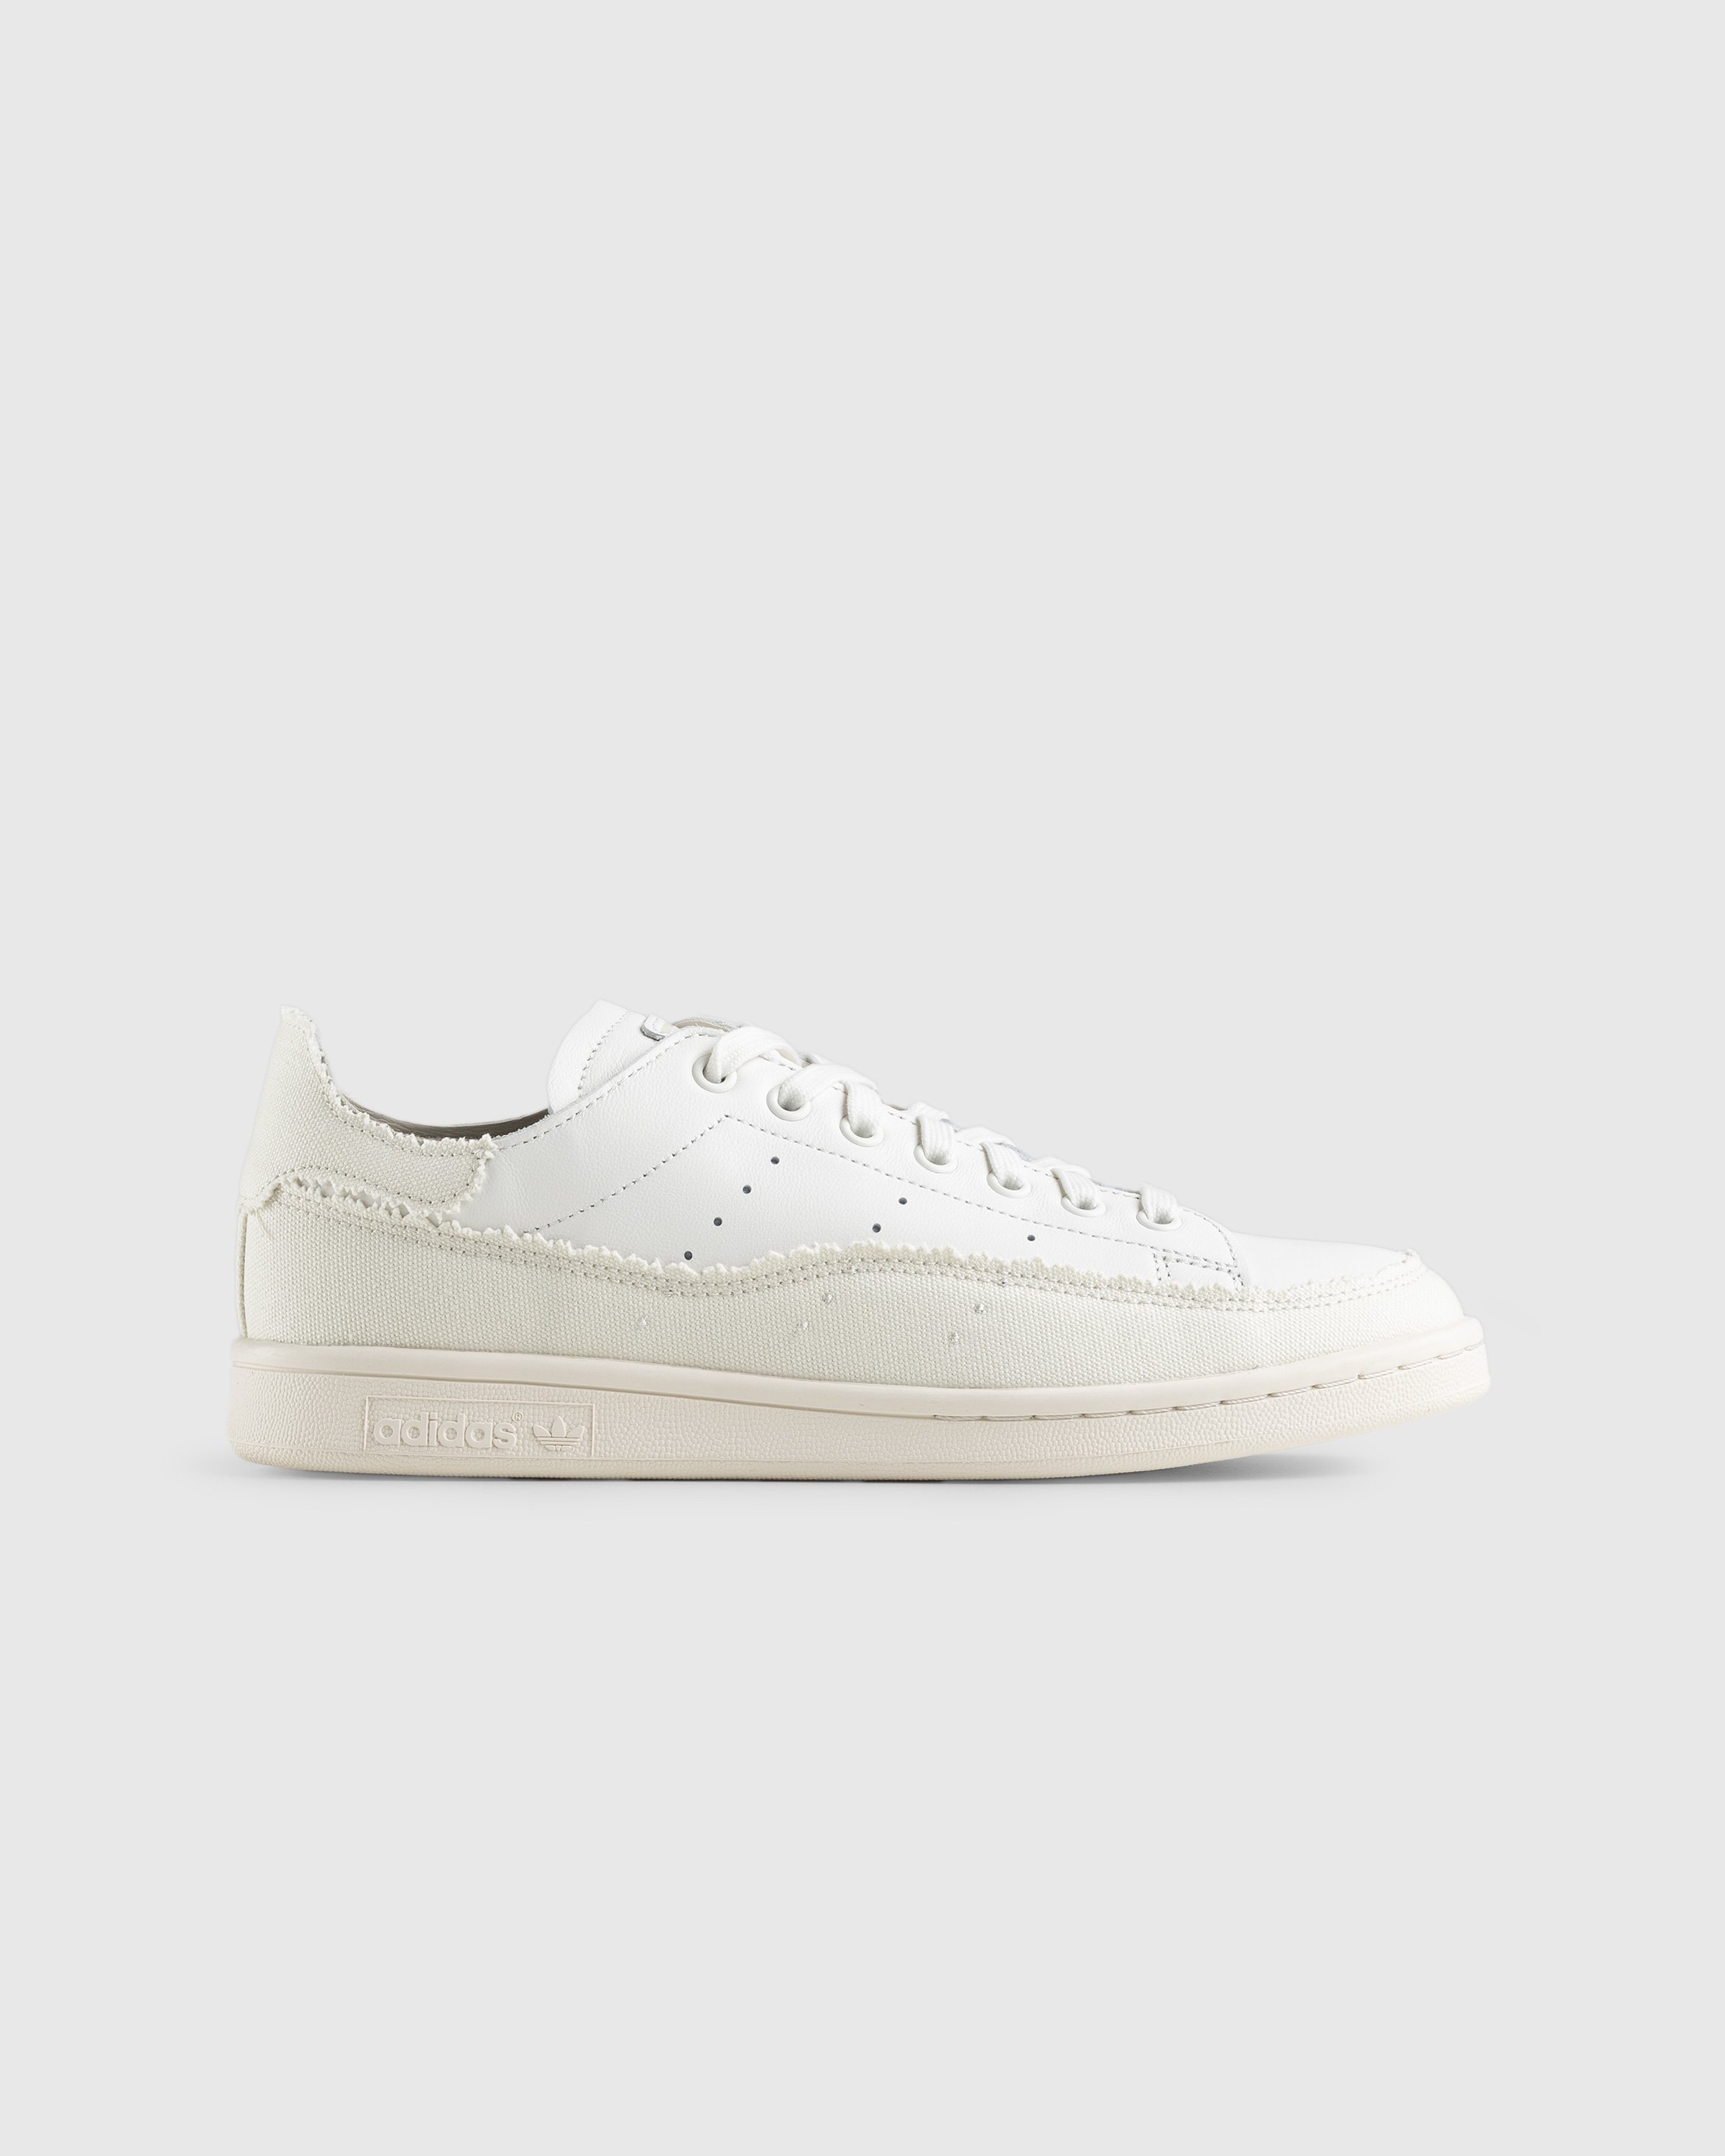 Adidas – Stan Smith Recon White - Sneakers - White - Image 1